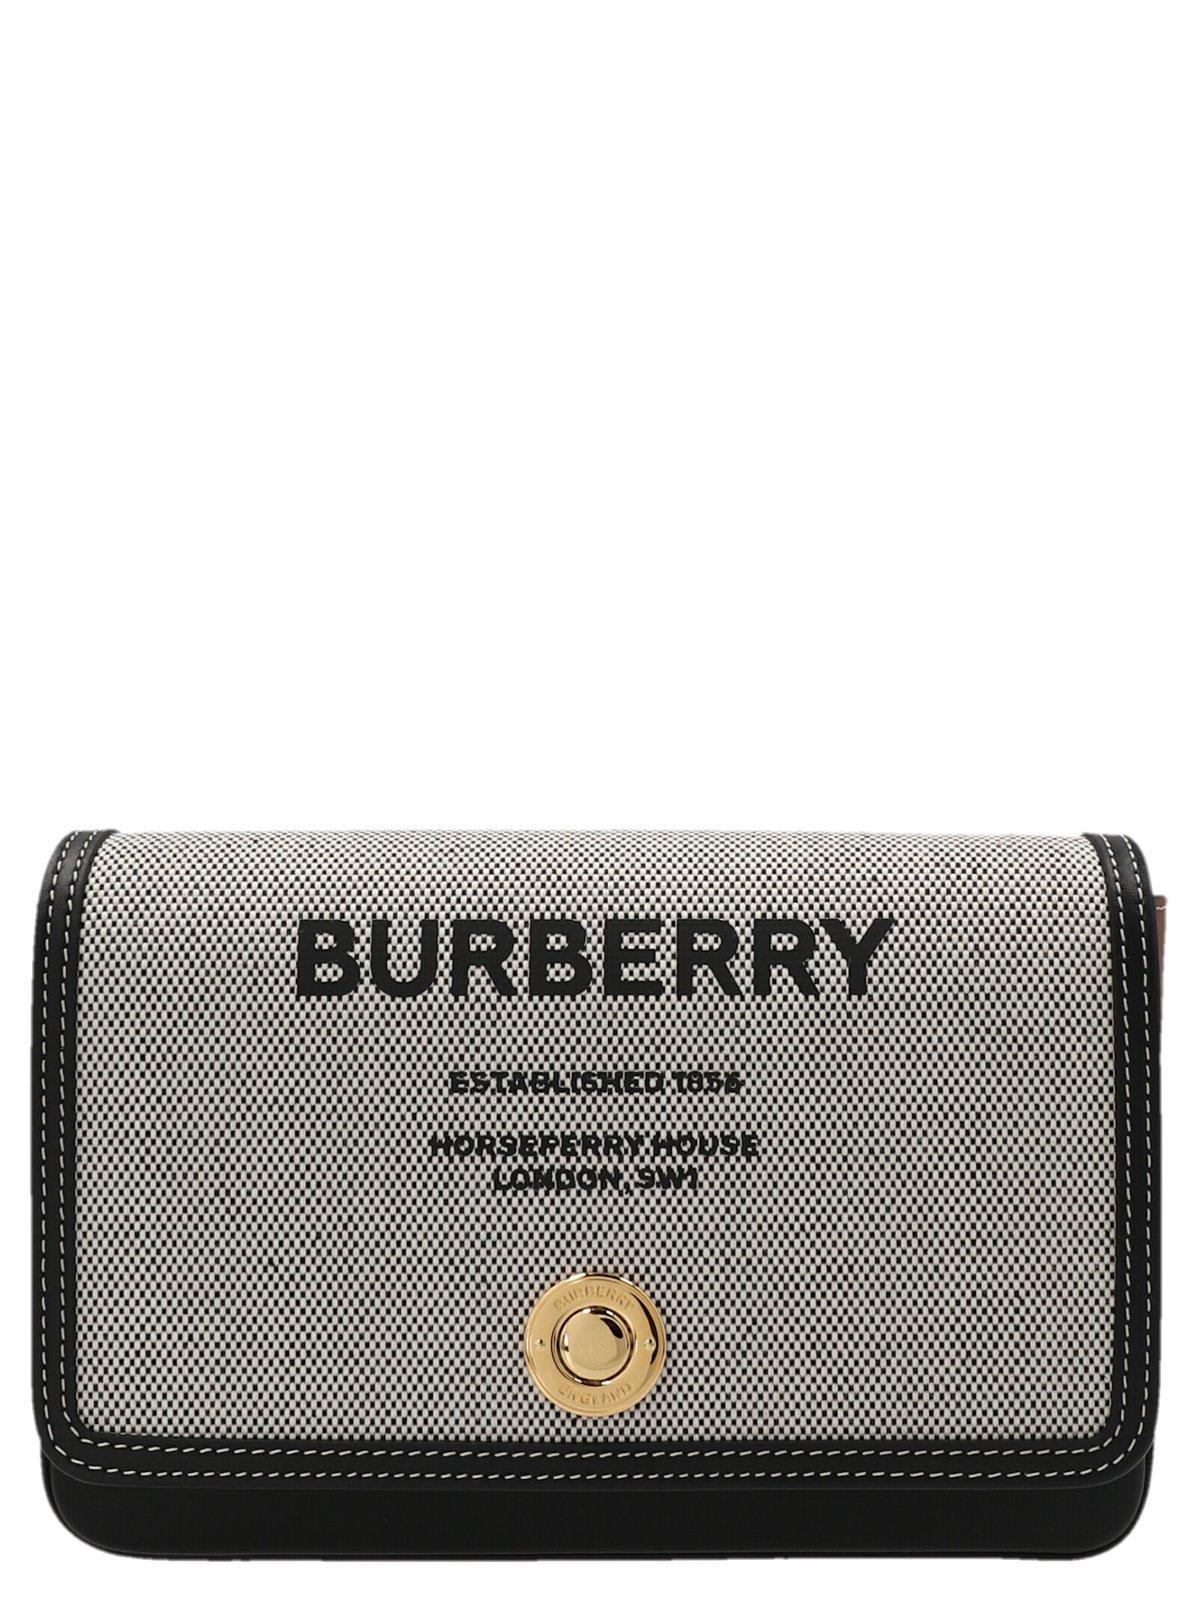 Burberry Logo Print Foldover Crossbody Bag